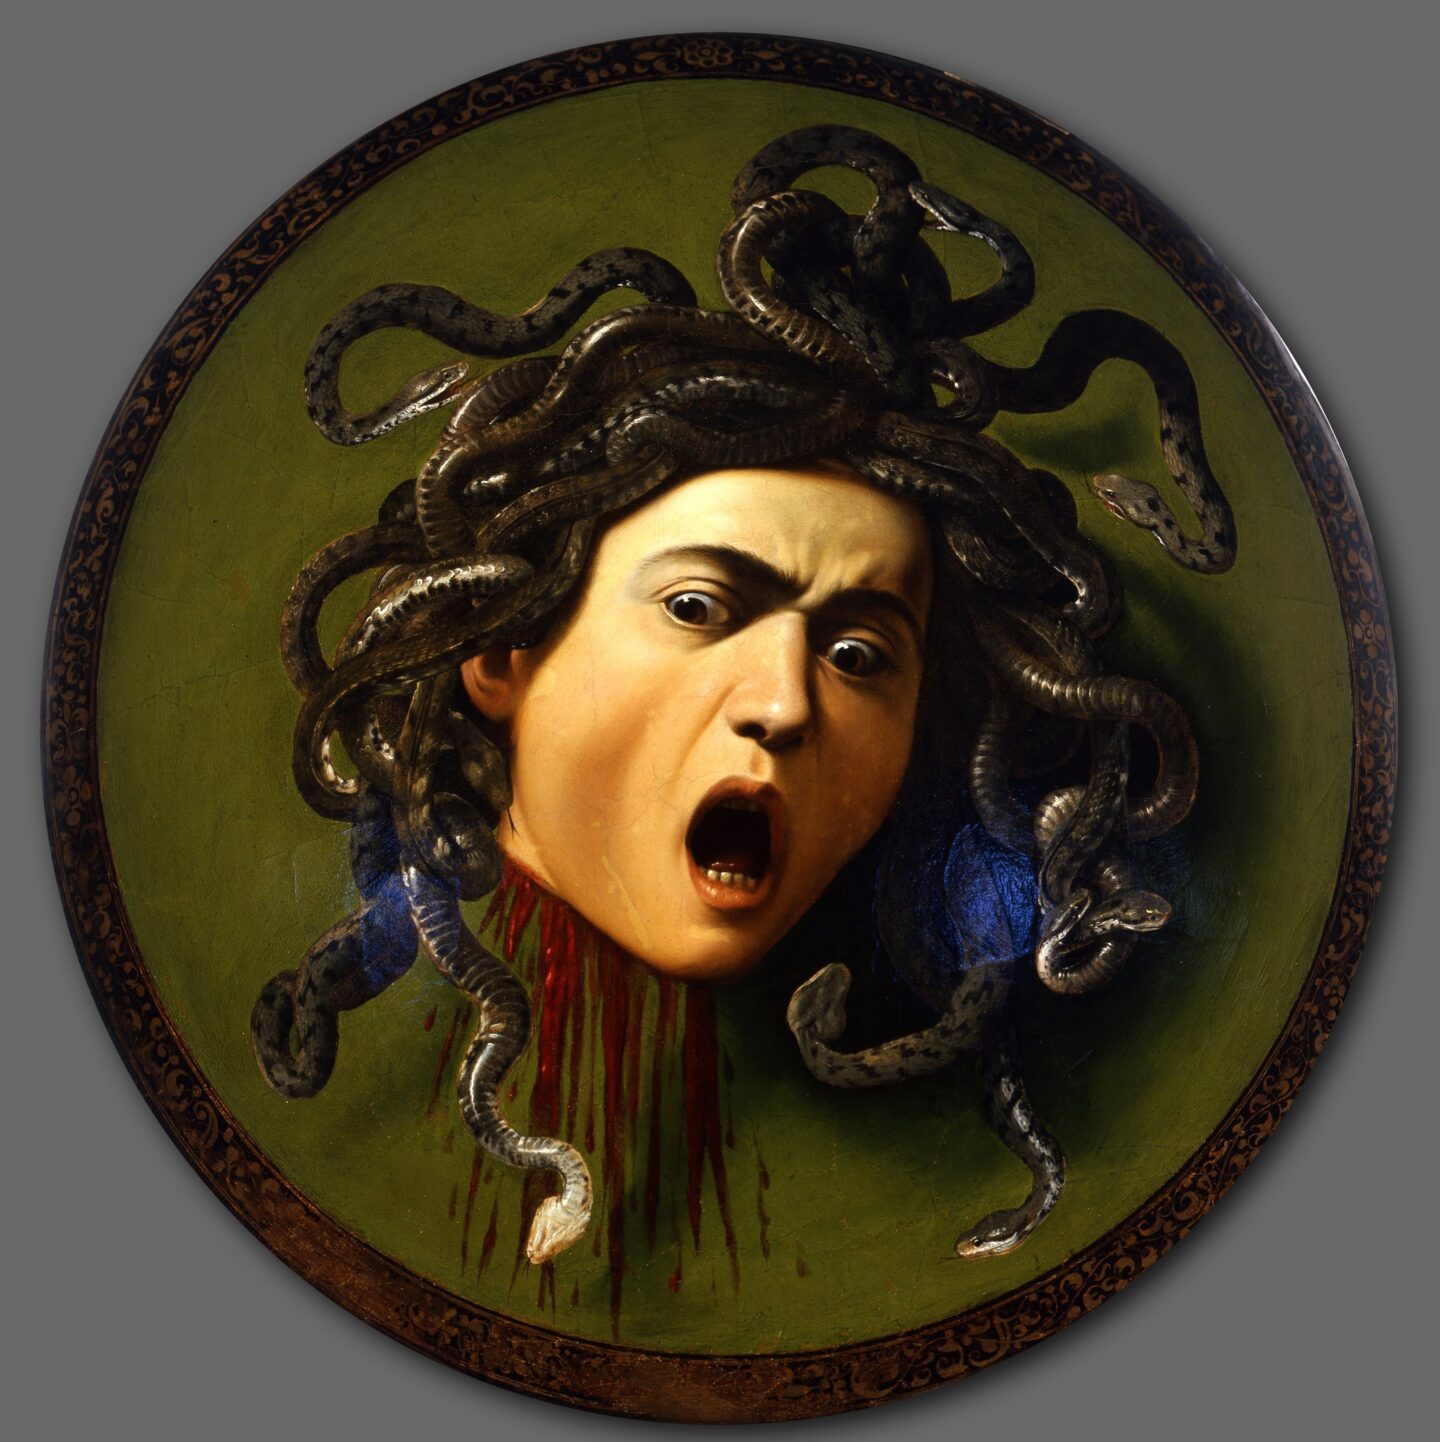 Das Stendhal Syndrom – Risiken und Nebenwirkungen beim Kunstgenuss, Caravaggio, Medusa